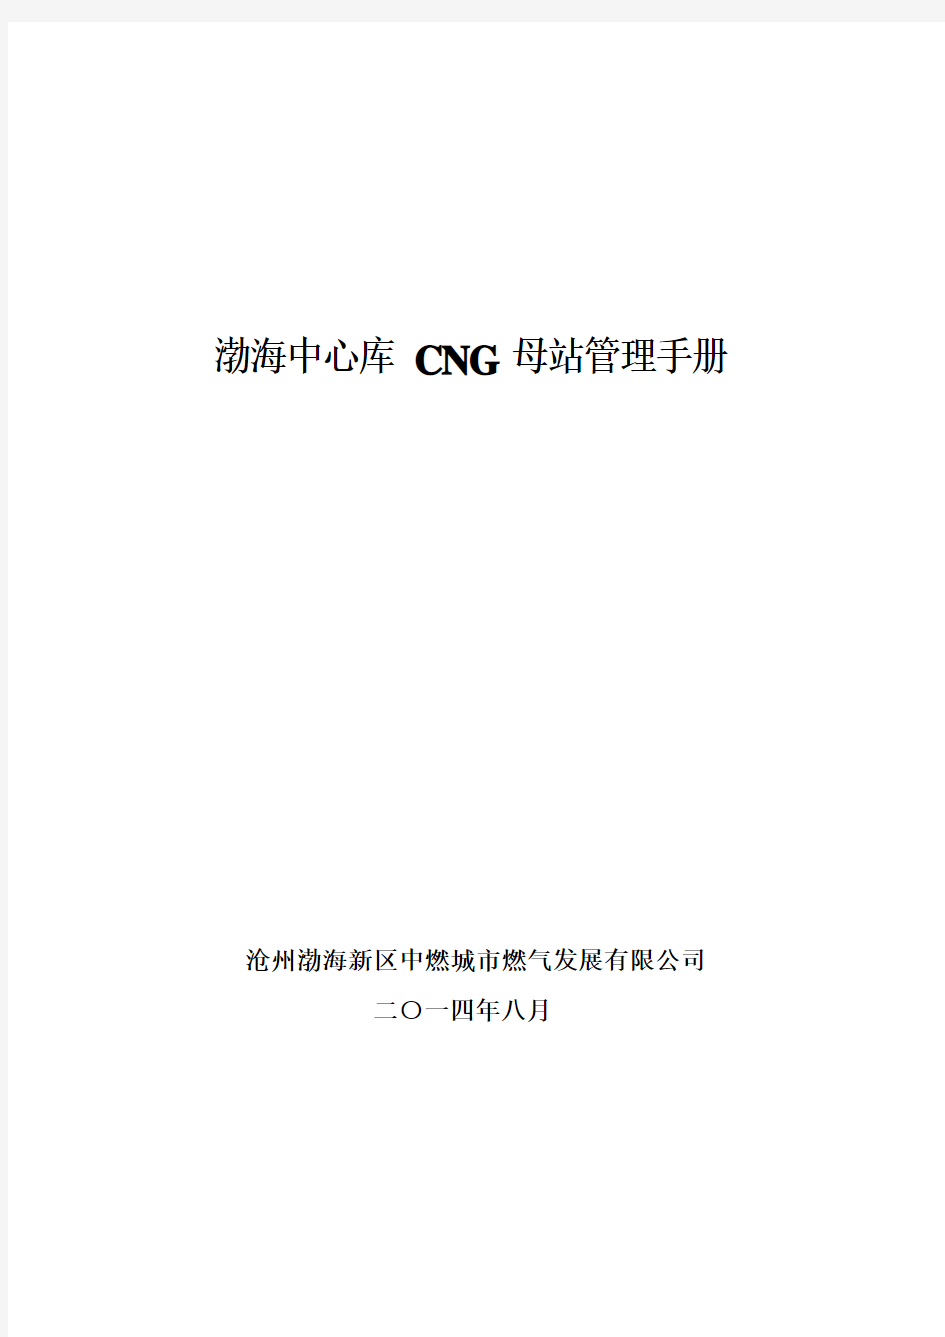 基层管理手册-CNG最新